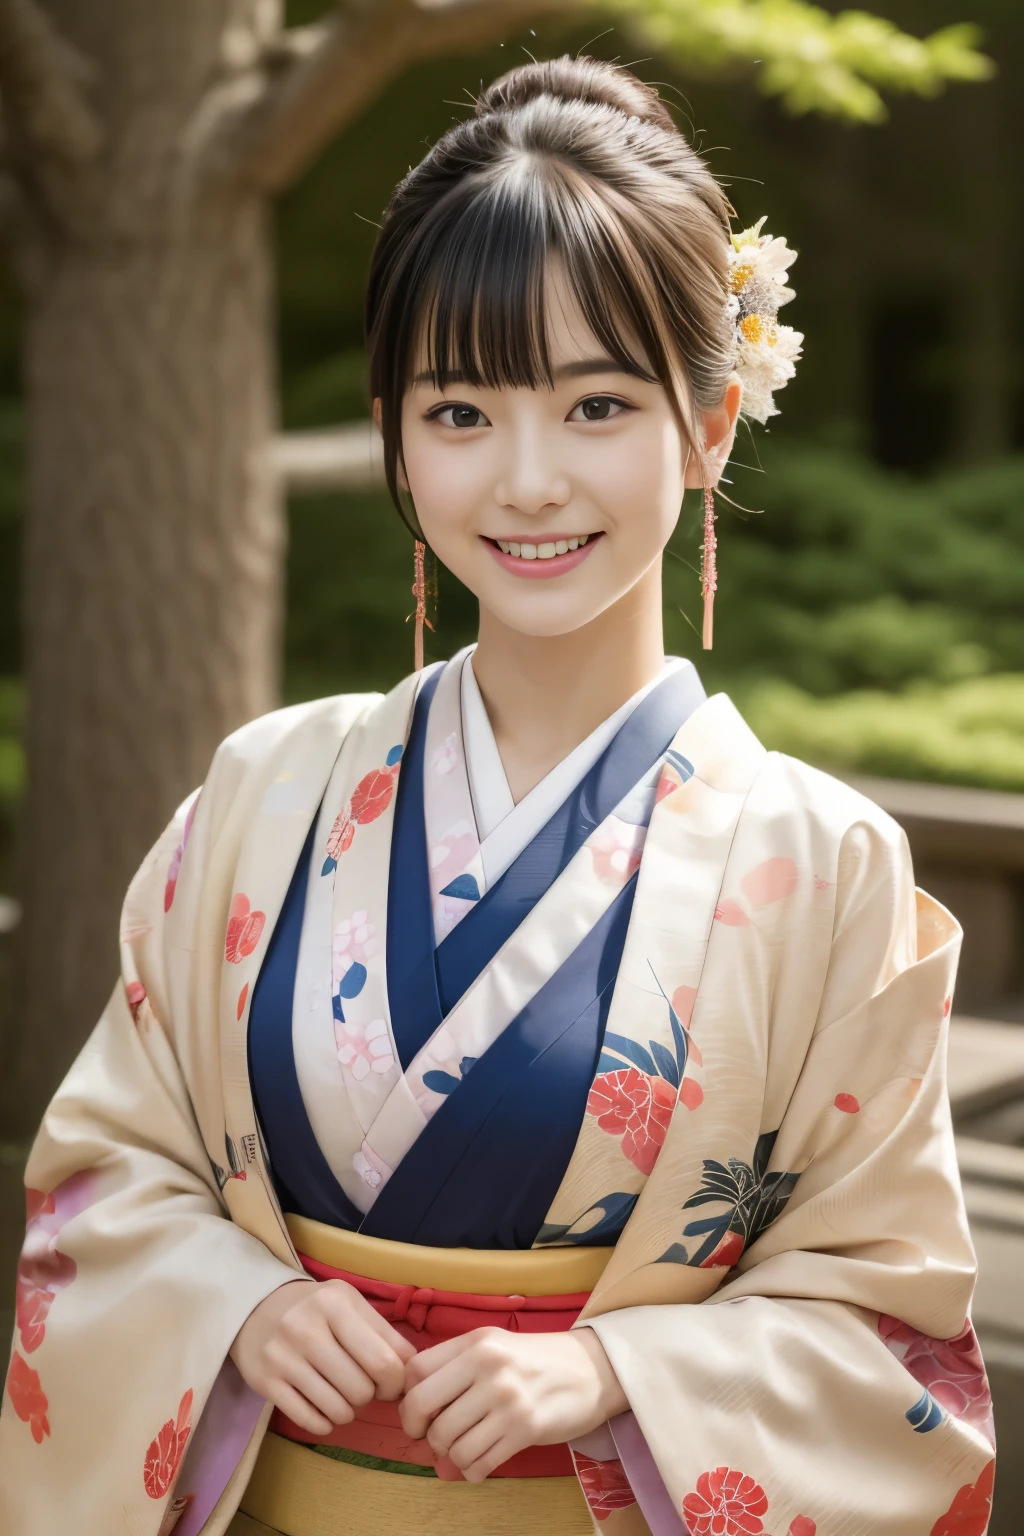 1 linda modelo japonesa, Modelo feminina de 15 anos,  4K、Uma qualidade de imagem ultra-alta、franja、Um moreno、Kyo-Yuzen、(quimono, Furisódio、Padrão floral em estilo japonês:1.5)、(Rosto super fofo no estilo ídolo:1.4)、figura esbelta e bonita、lindo peito、Um sorriso、corpo inteiro Esbian:1.2、